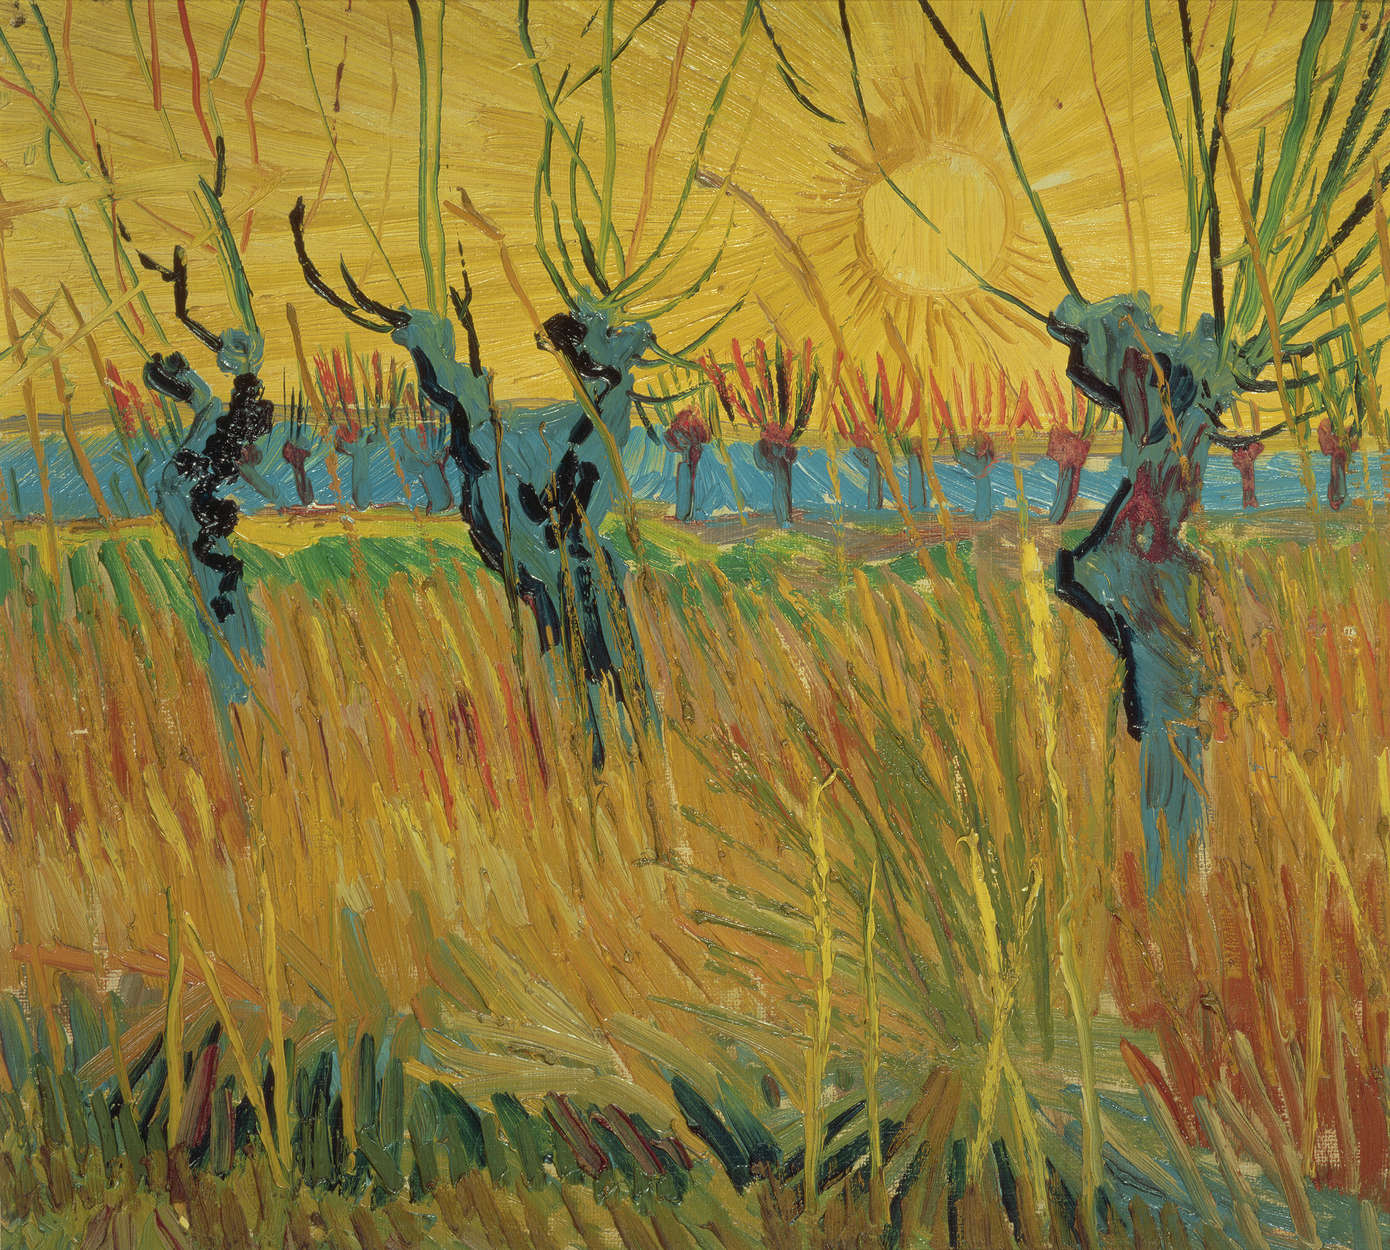             Papier peint panoramique "Pâturages au coucher du soleil" de Vincent van Gogh
        